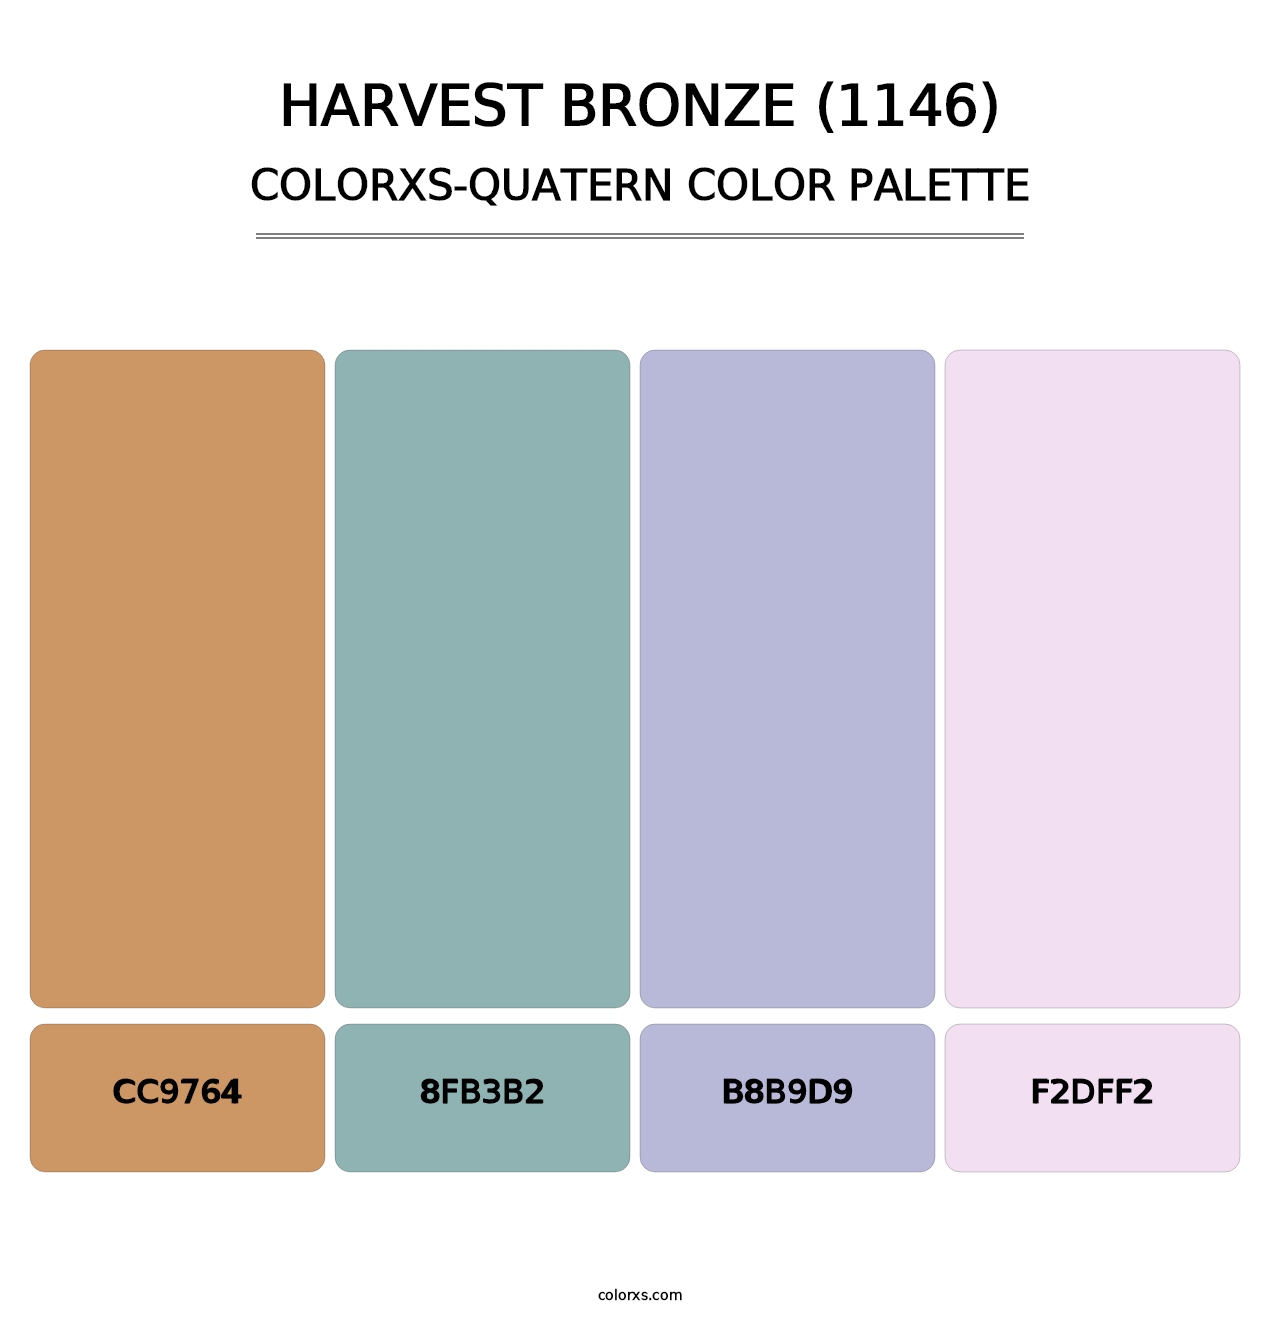 Harvest Bronze (1146) - Colorxs Quatern Palette